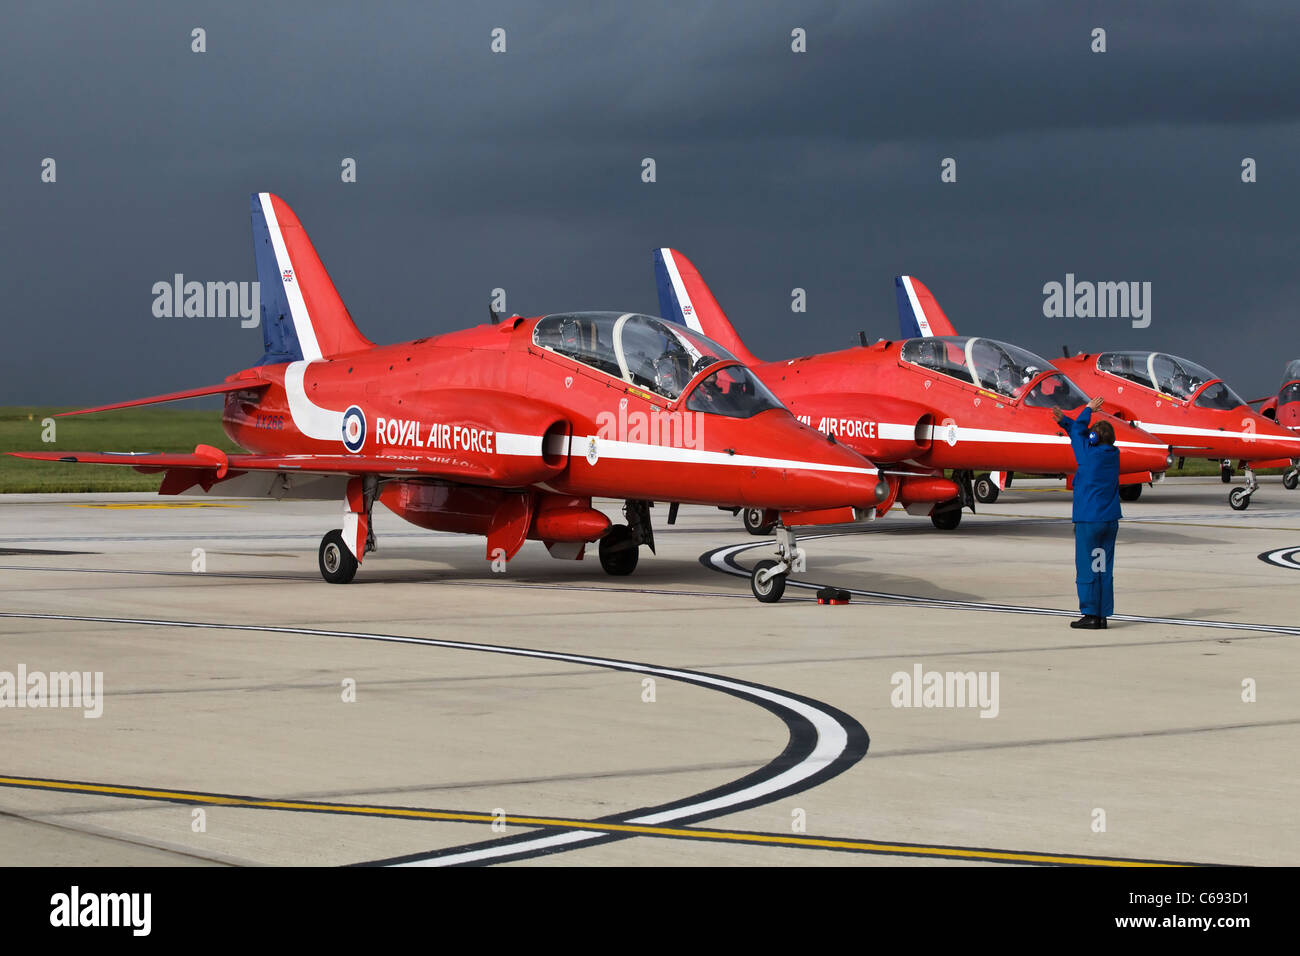 BAE Systeme Hawk T1 Trainingsflugzeug der RAF Red Arrows Kunstflugstaffel gemarshallt wird zurück auf Stand nach einer Anzeige Stockfoto